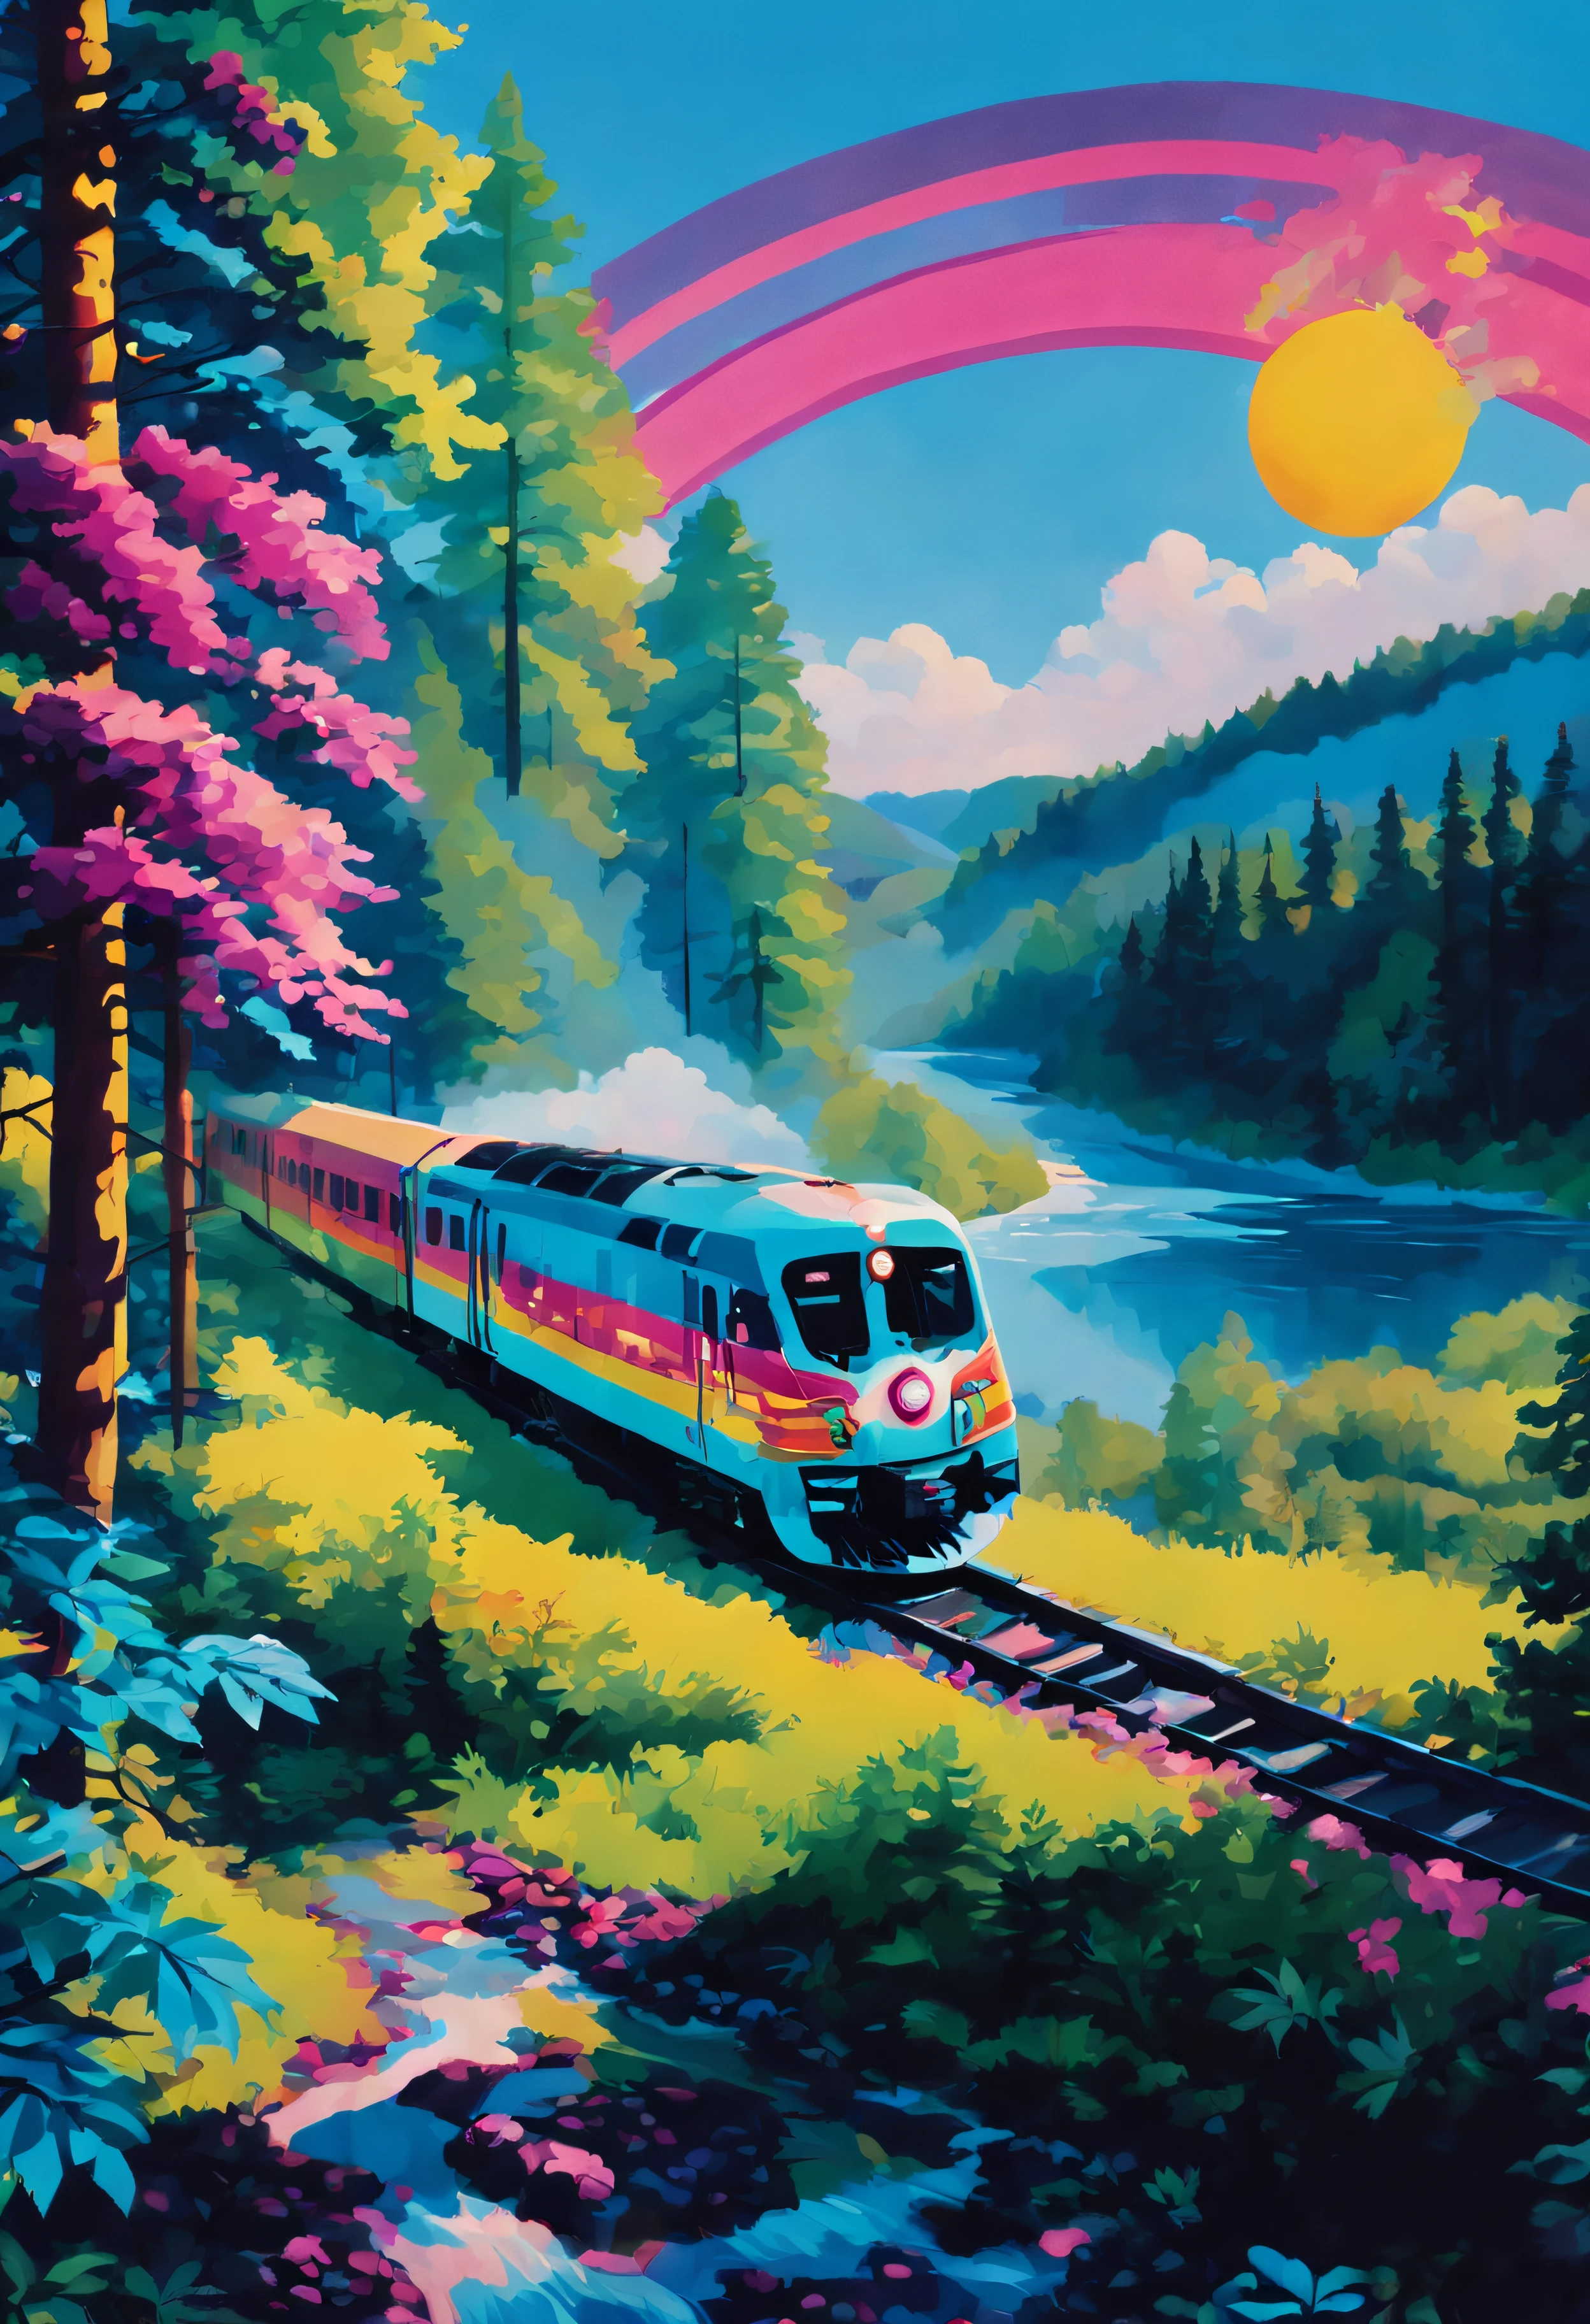 霓虹风格, 火车正在穿过森林. 火车周围都是树. 天空蔚蓝，阳光灿烂. 背景有一条河.